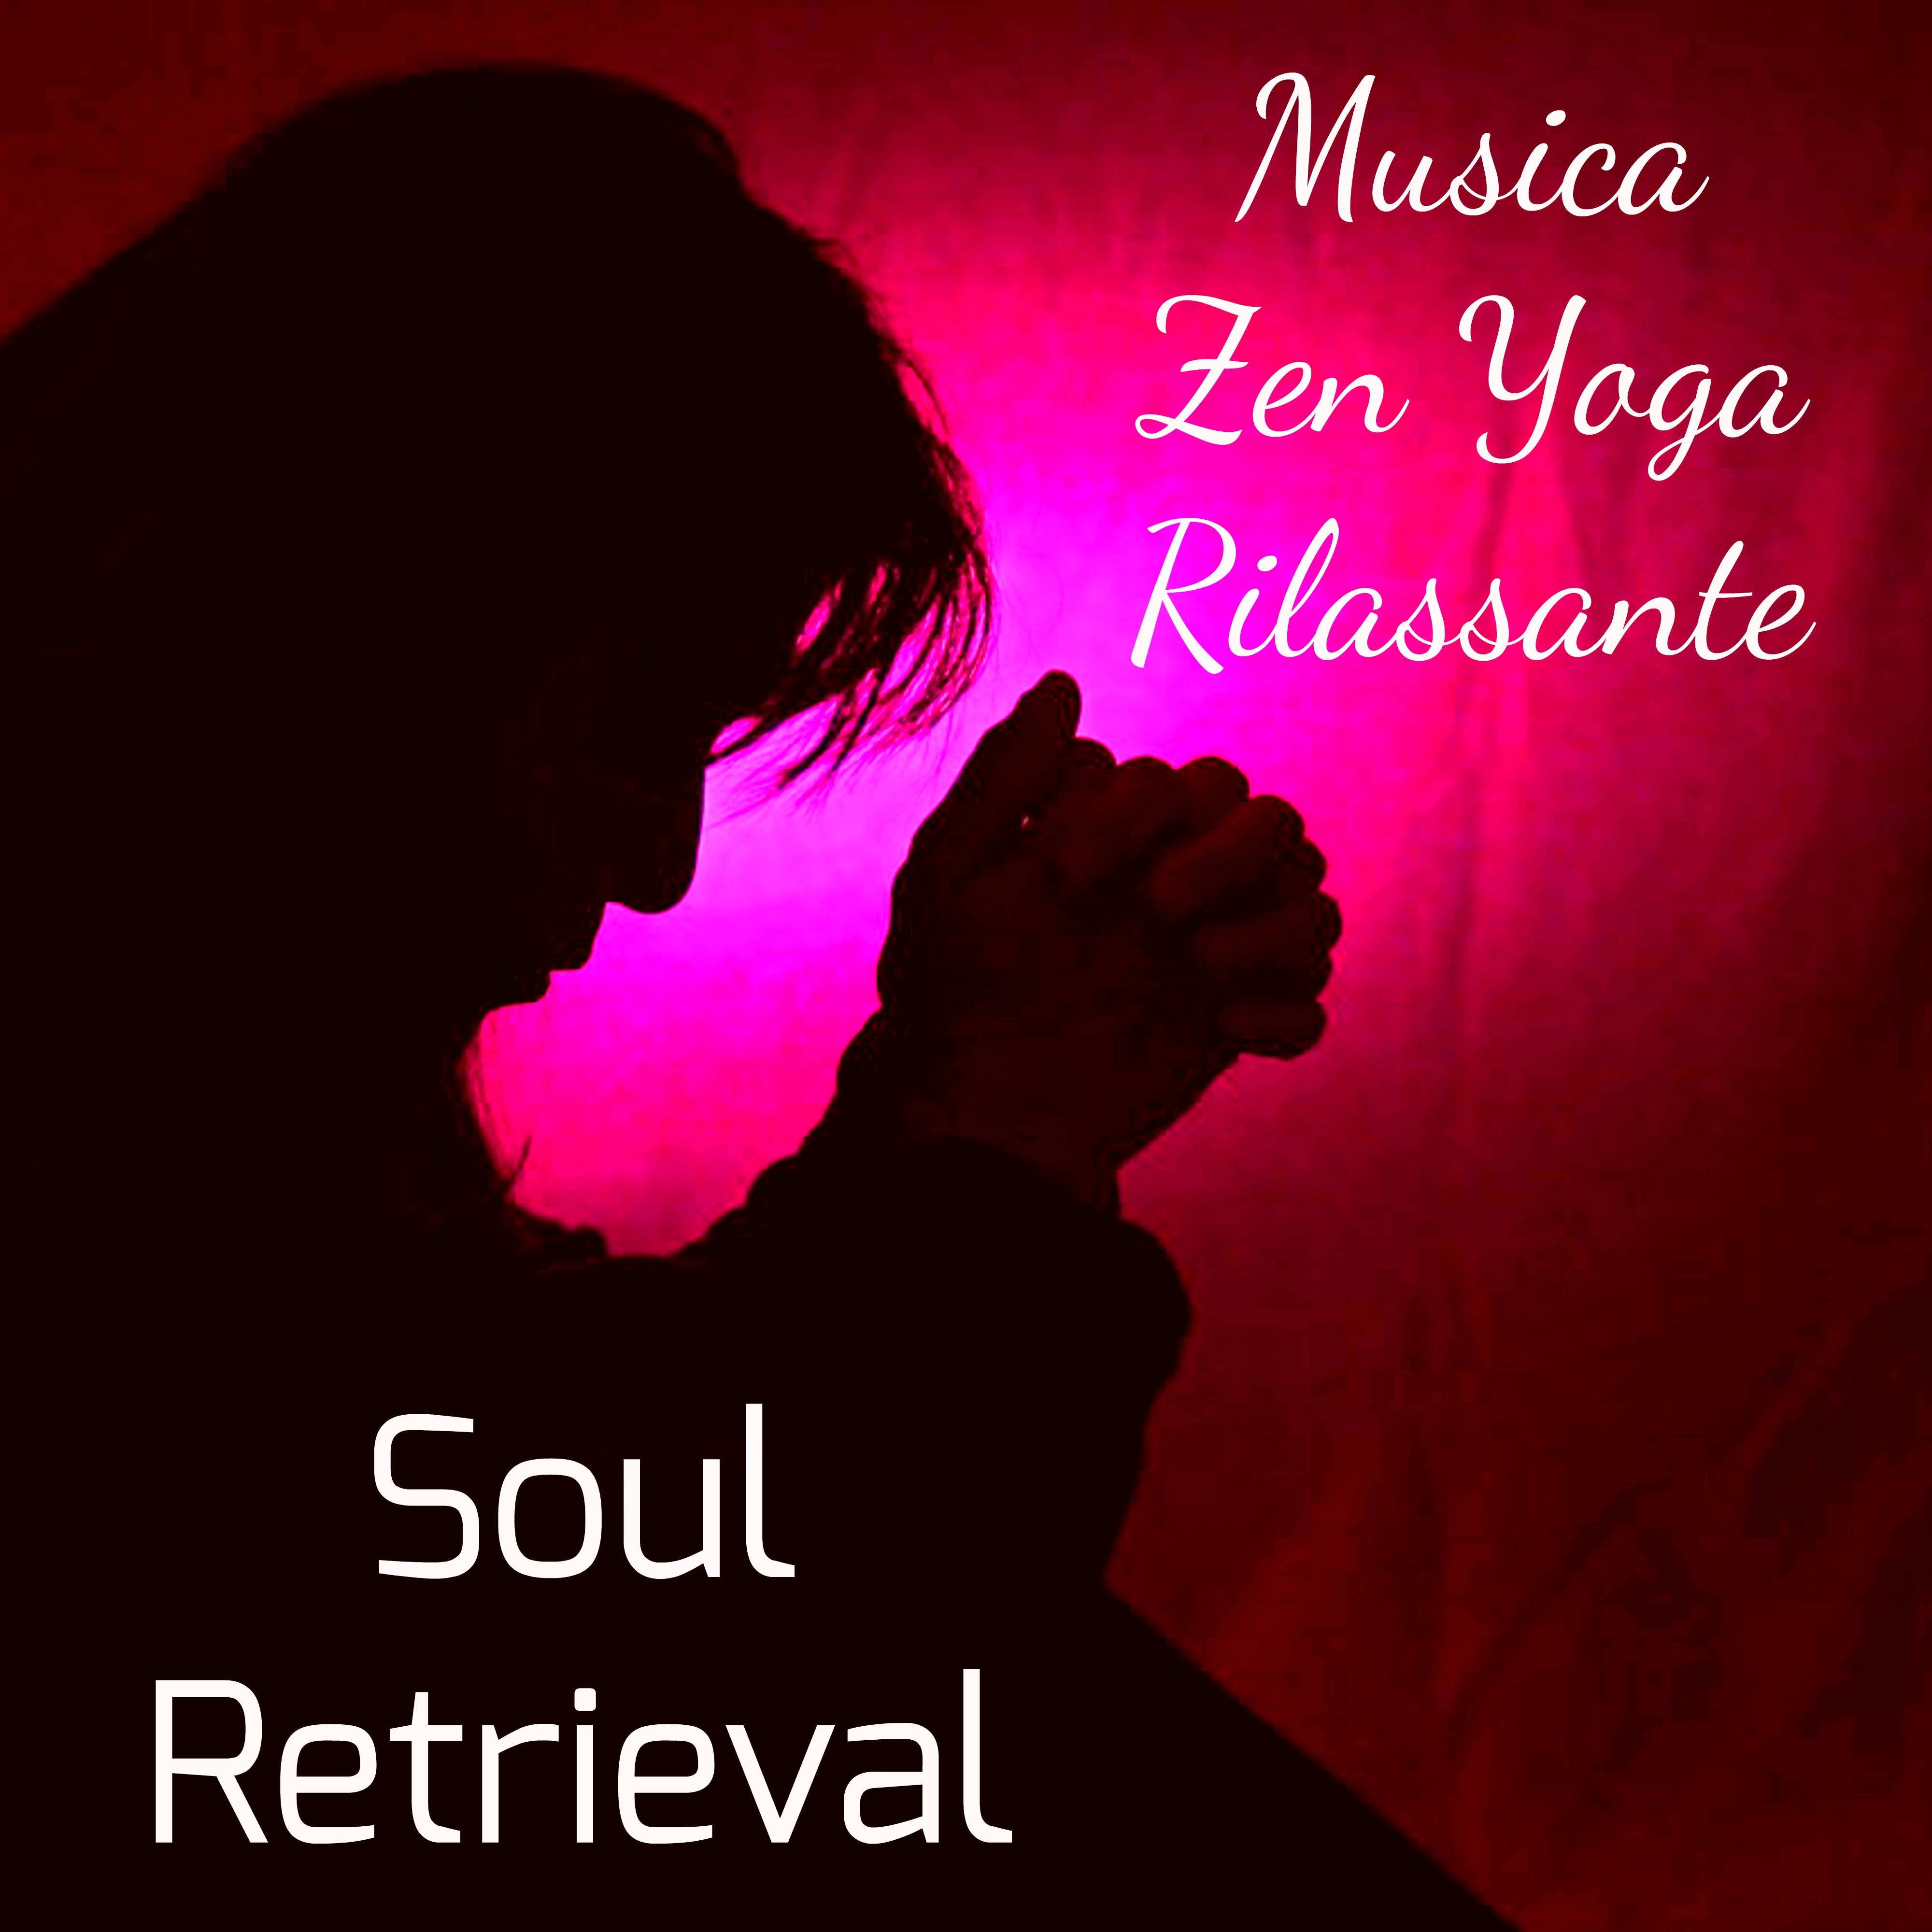 Soul Retrieval - Musica Zen Yoga Rilassante per Tecniche di Meditazione Fasi del Sonno Massoterapia con Suoni Naturali Binaurali Calmanti Strumentali